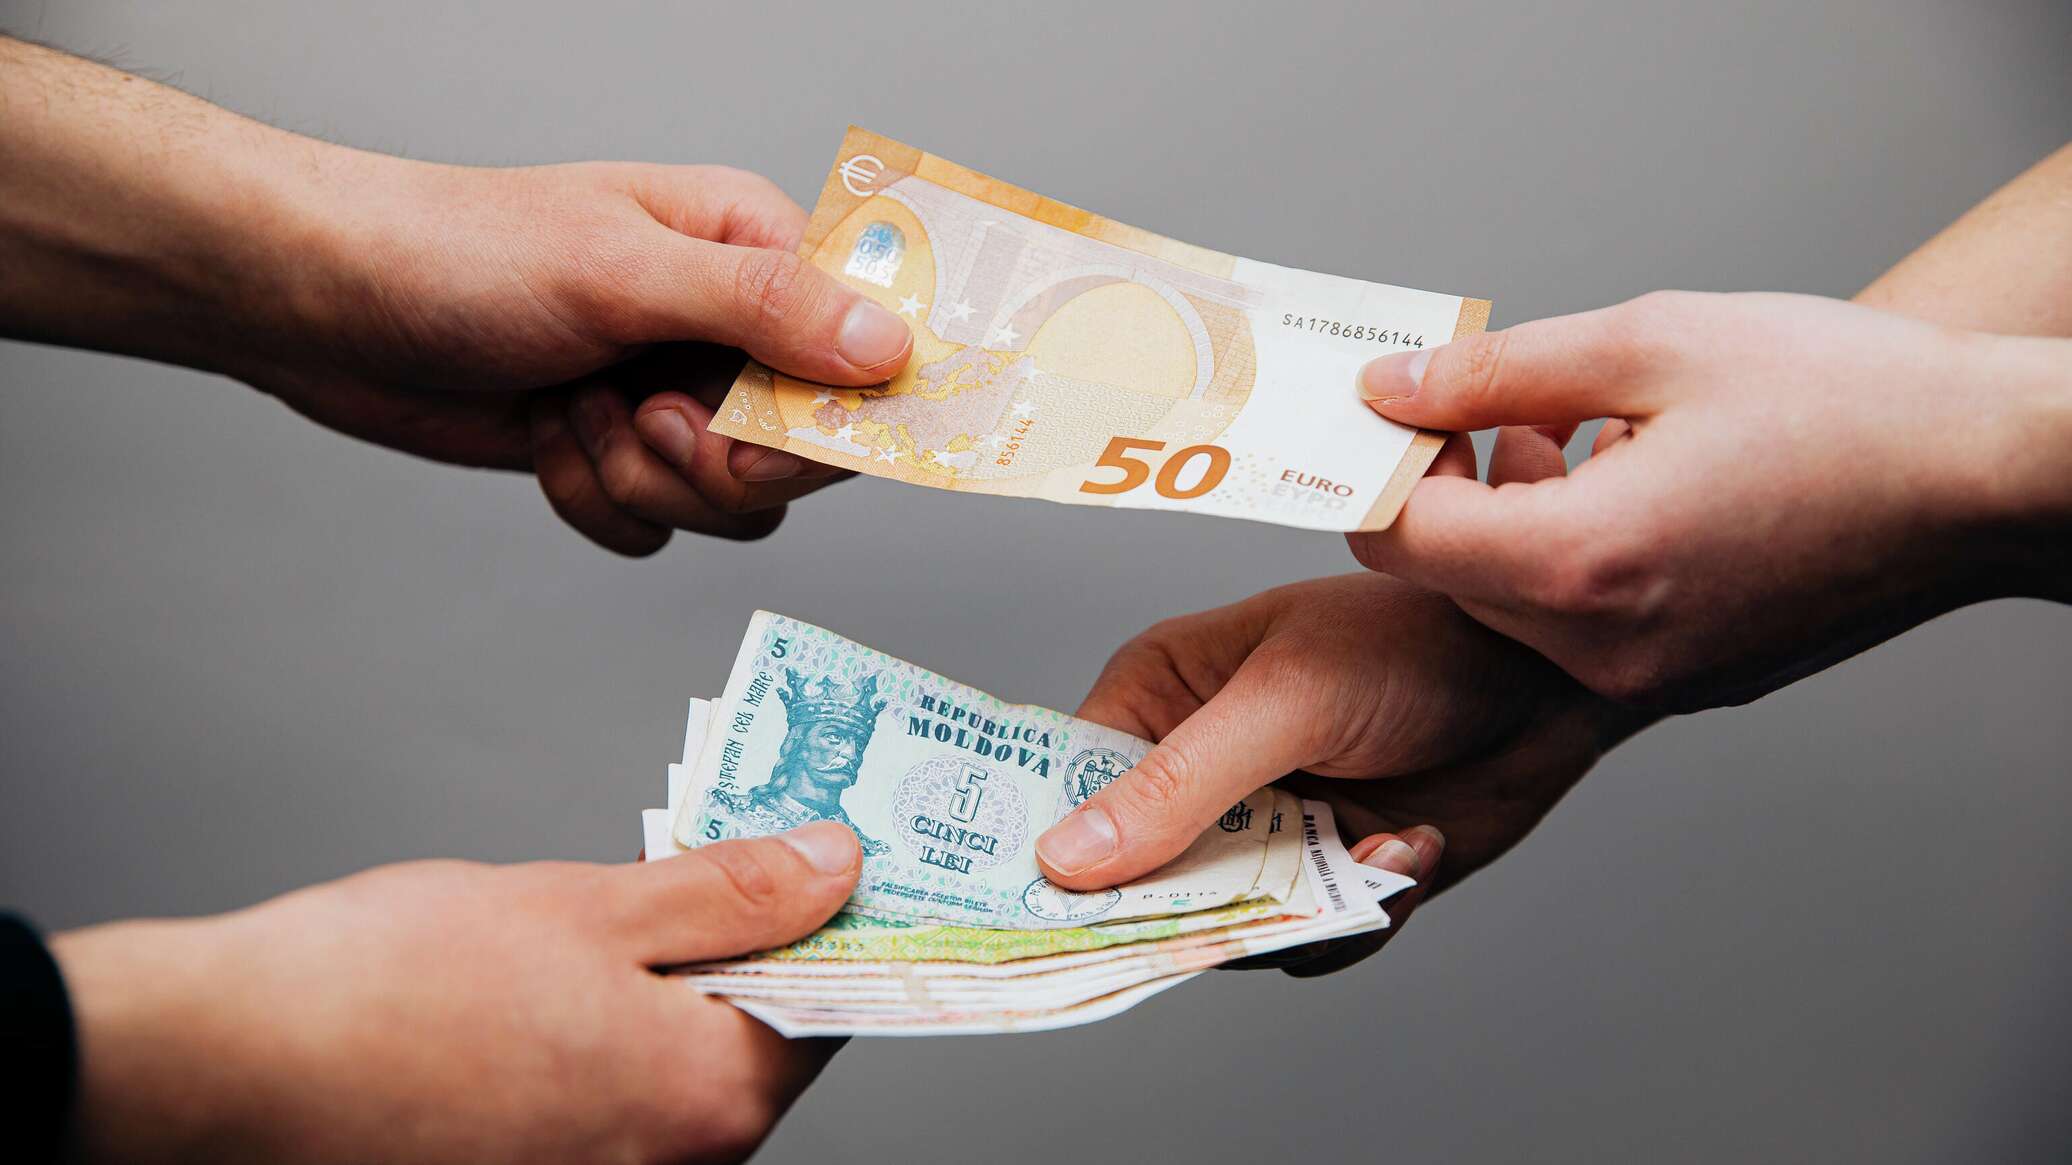 990 грн в рублях. Евро и грн в руках. Доллары в молдавских леях. Национальная валюта Молдавии.